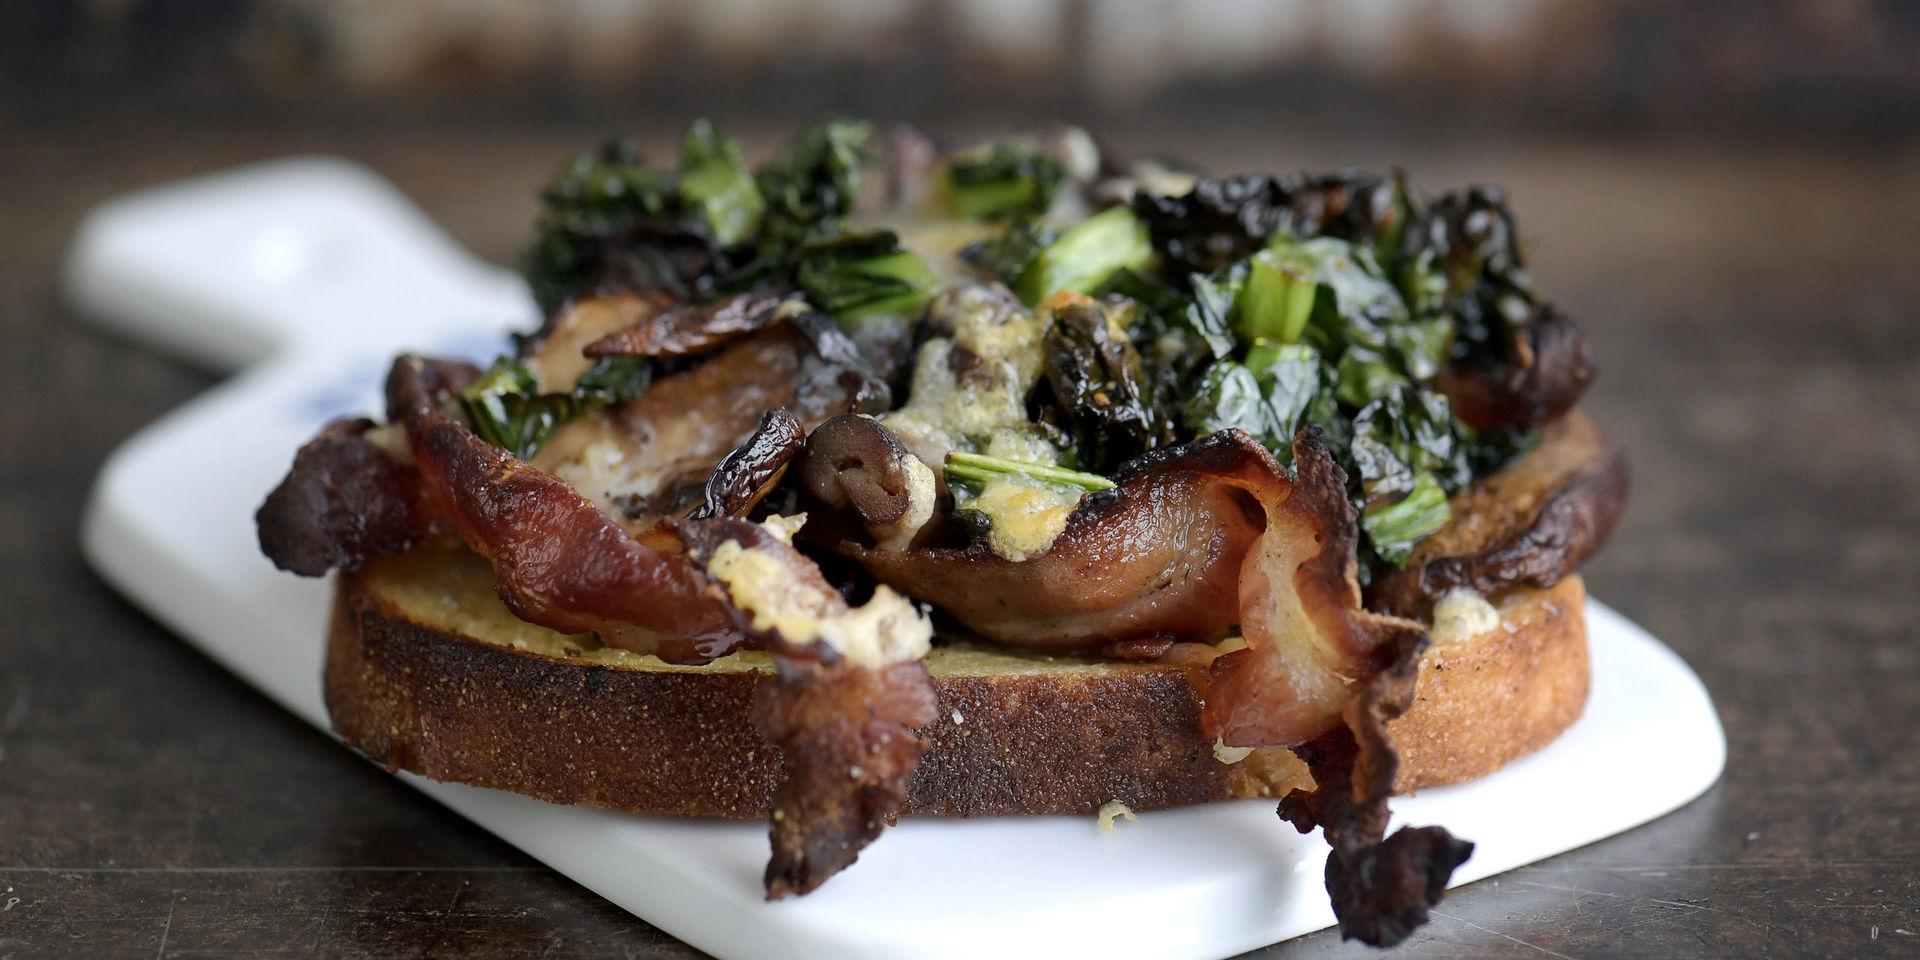 En svampmacka sitter aldrig fel. Spetsad med bacon, kål och Västerbottensost blir det en hel middag.